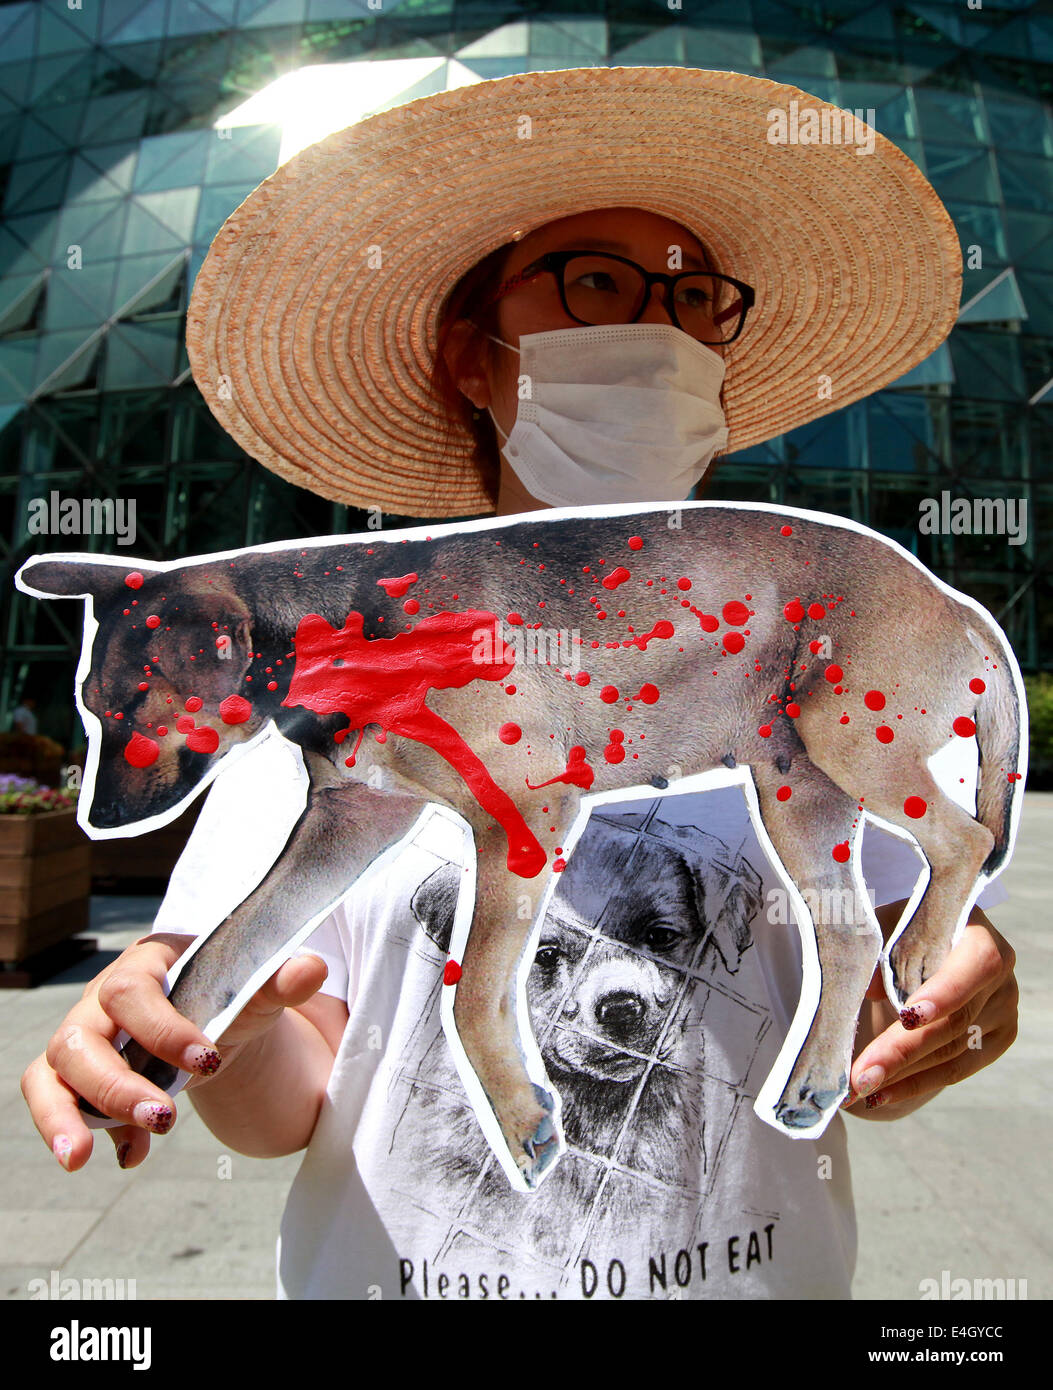 (140711) -- SEOUL, luglio 11, 2014 (Xinhua) -- Un animale attivista per i diritti detiene una targhetta durante una manifestazione di protesta contro il mangiare carne di cane di fronte al municipio di Seoul, Corea del Sud, 11 luglio, 2014. (Xinhua/Park Jin-hee) Foto Stock